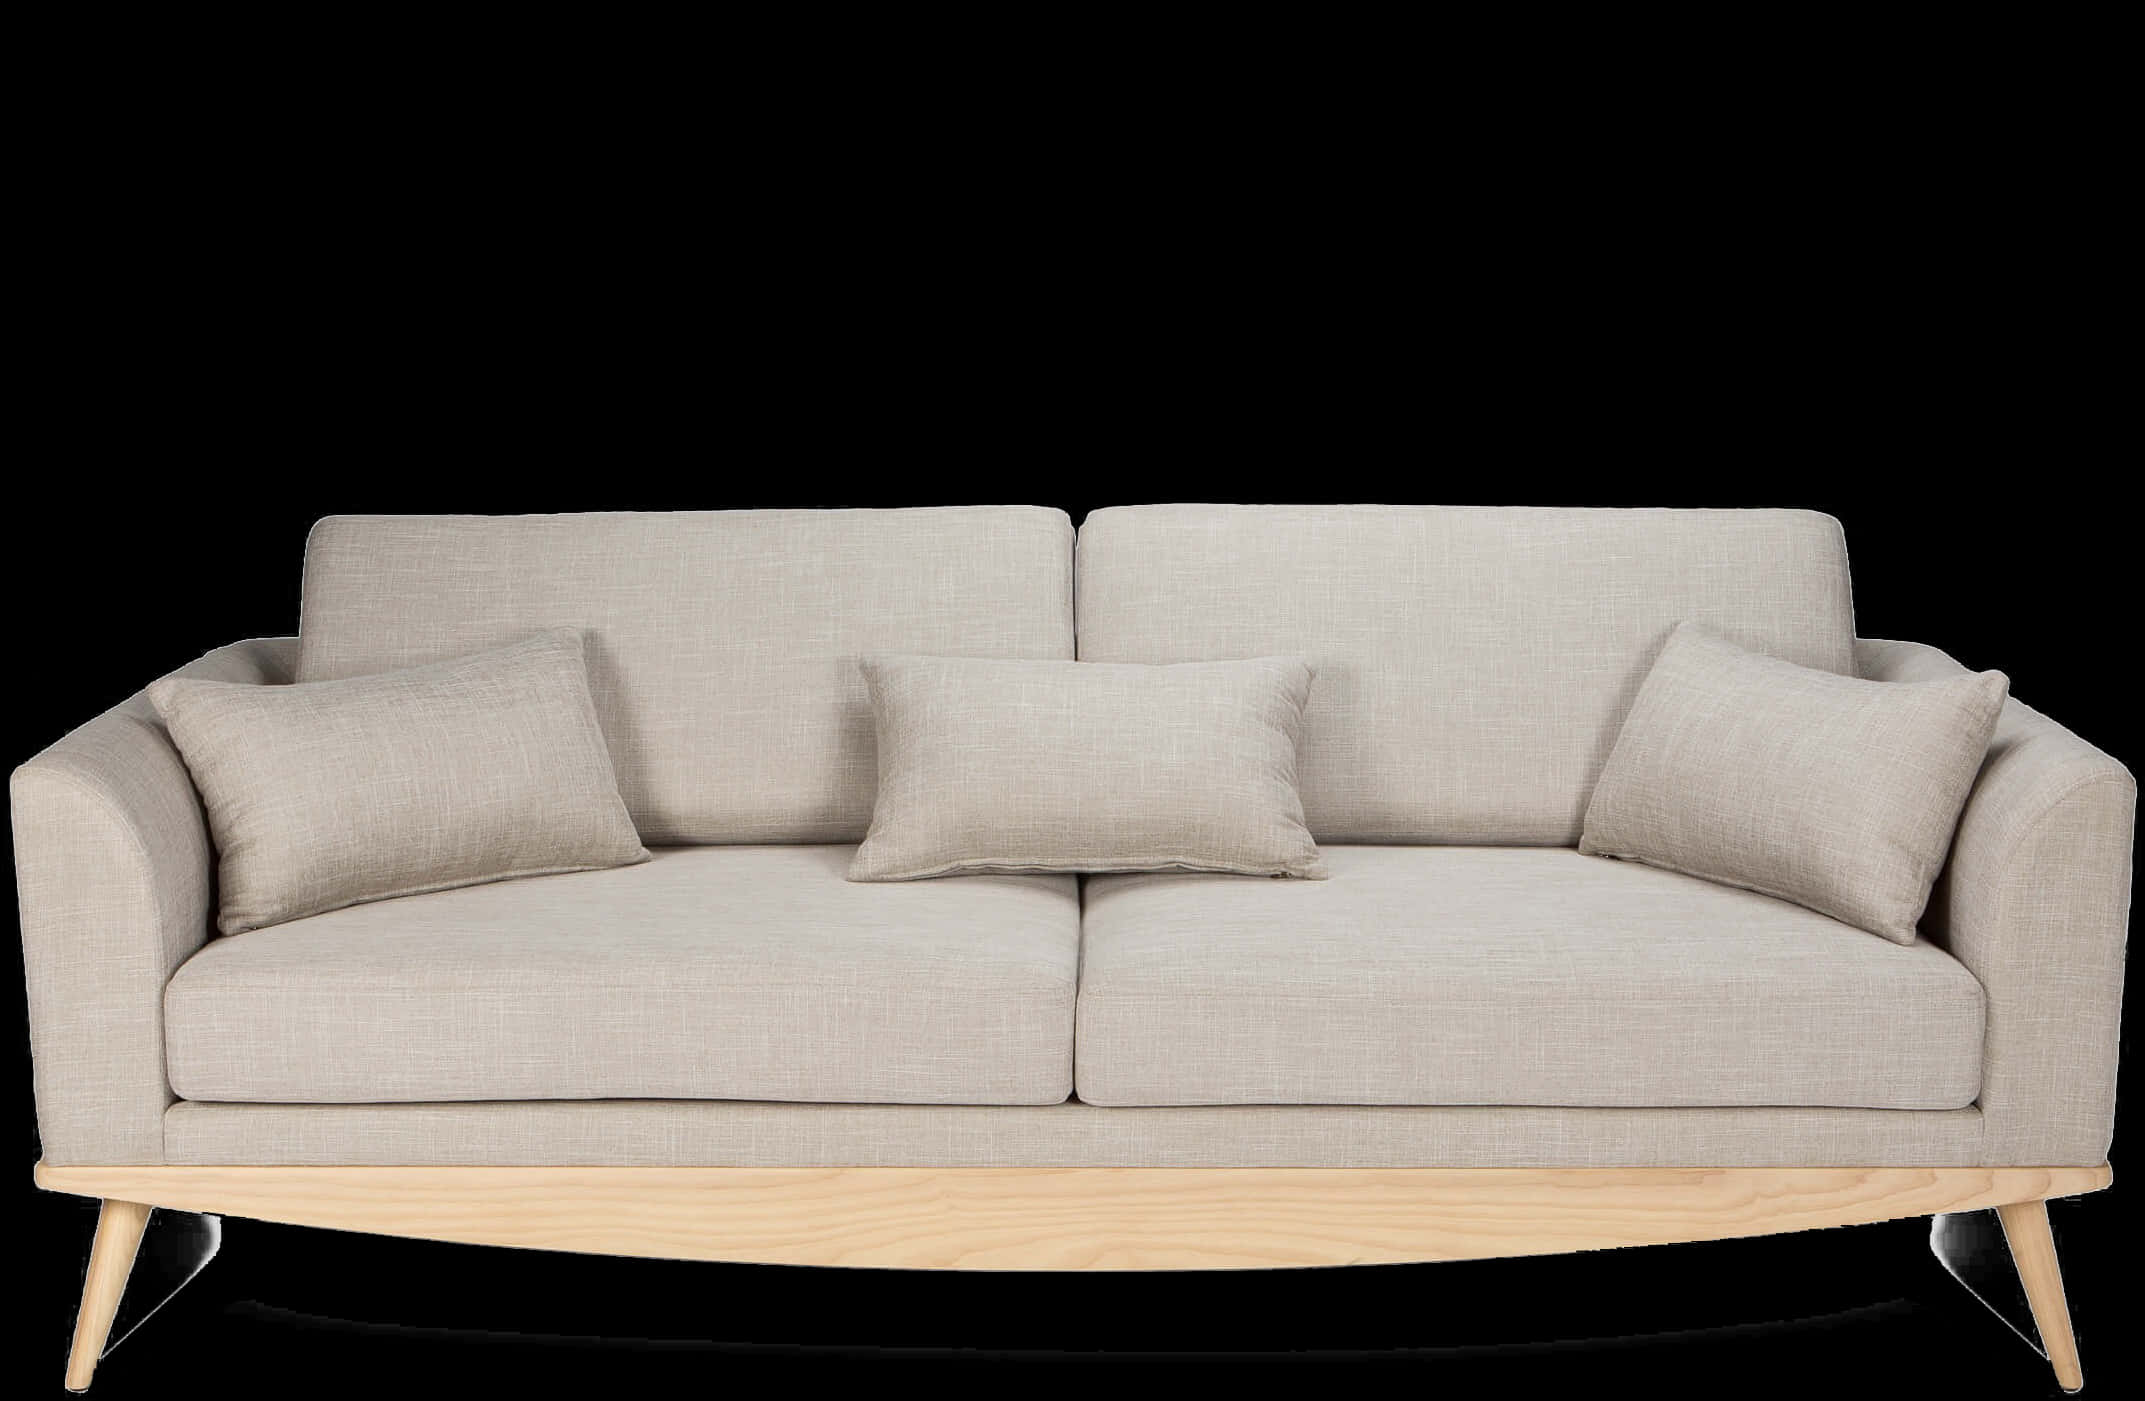 Modern Beige Couch Black Background